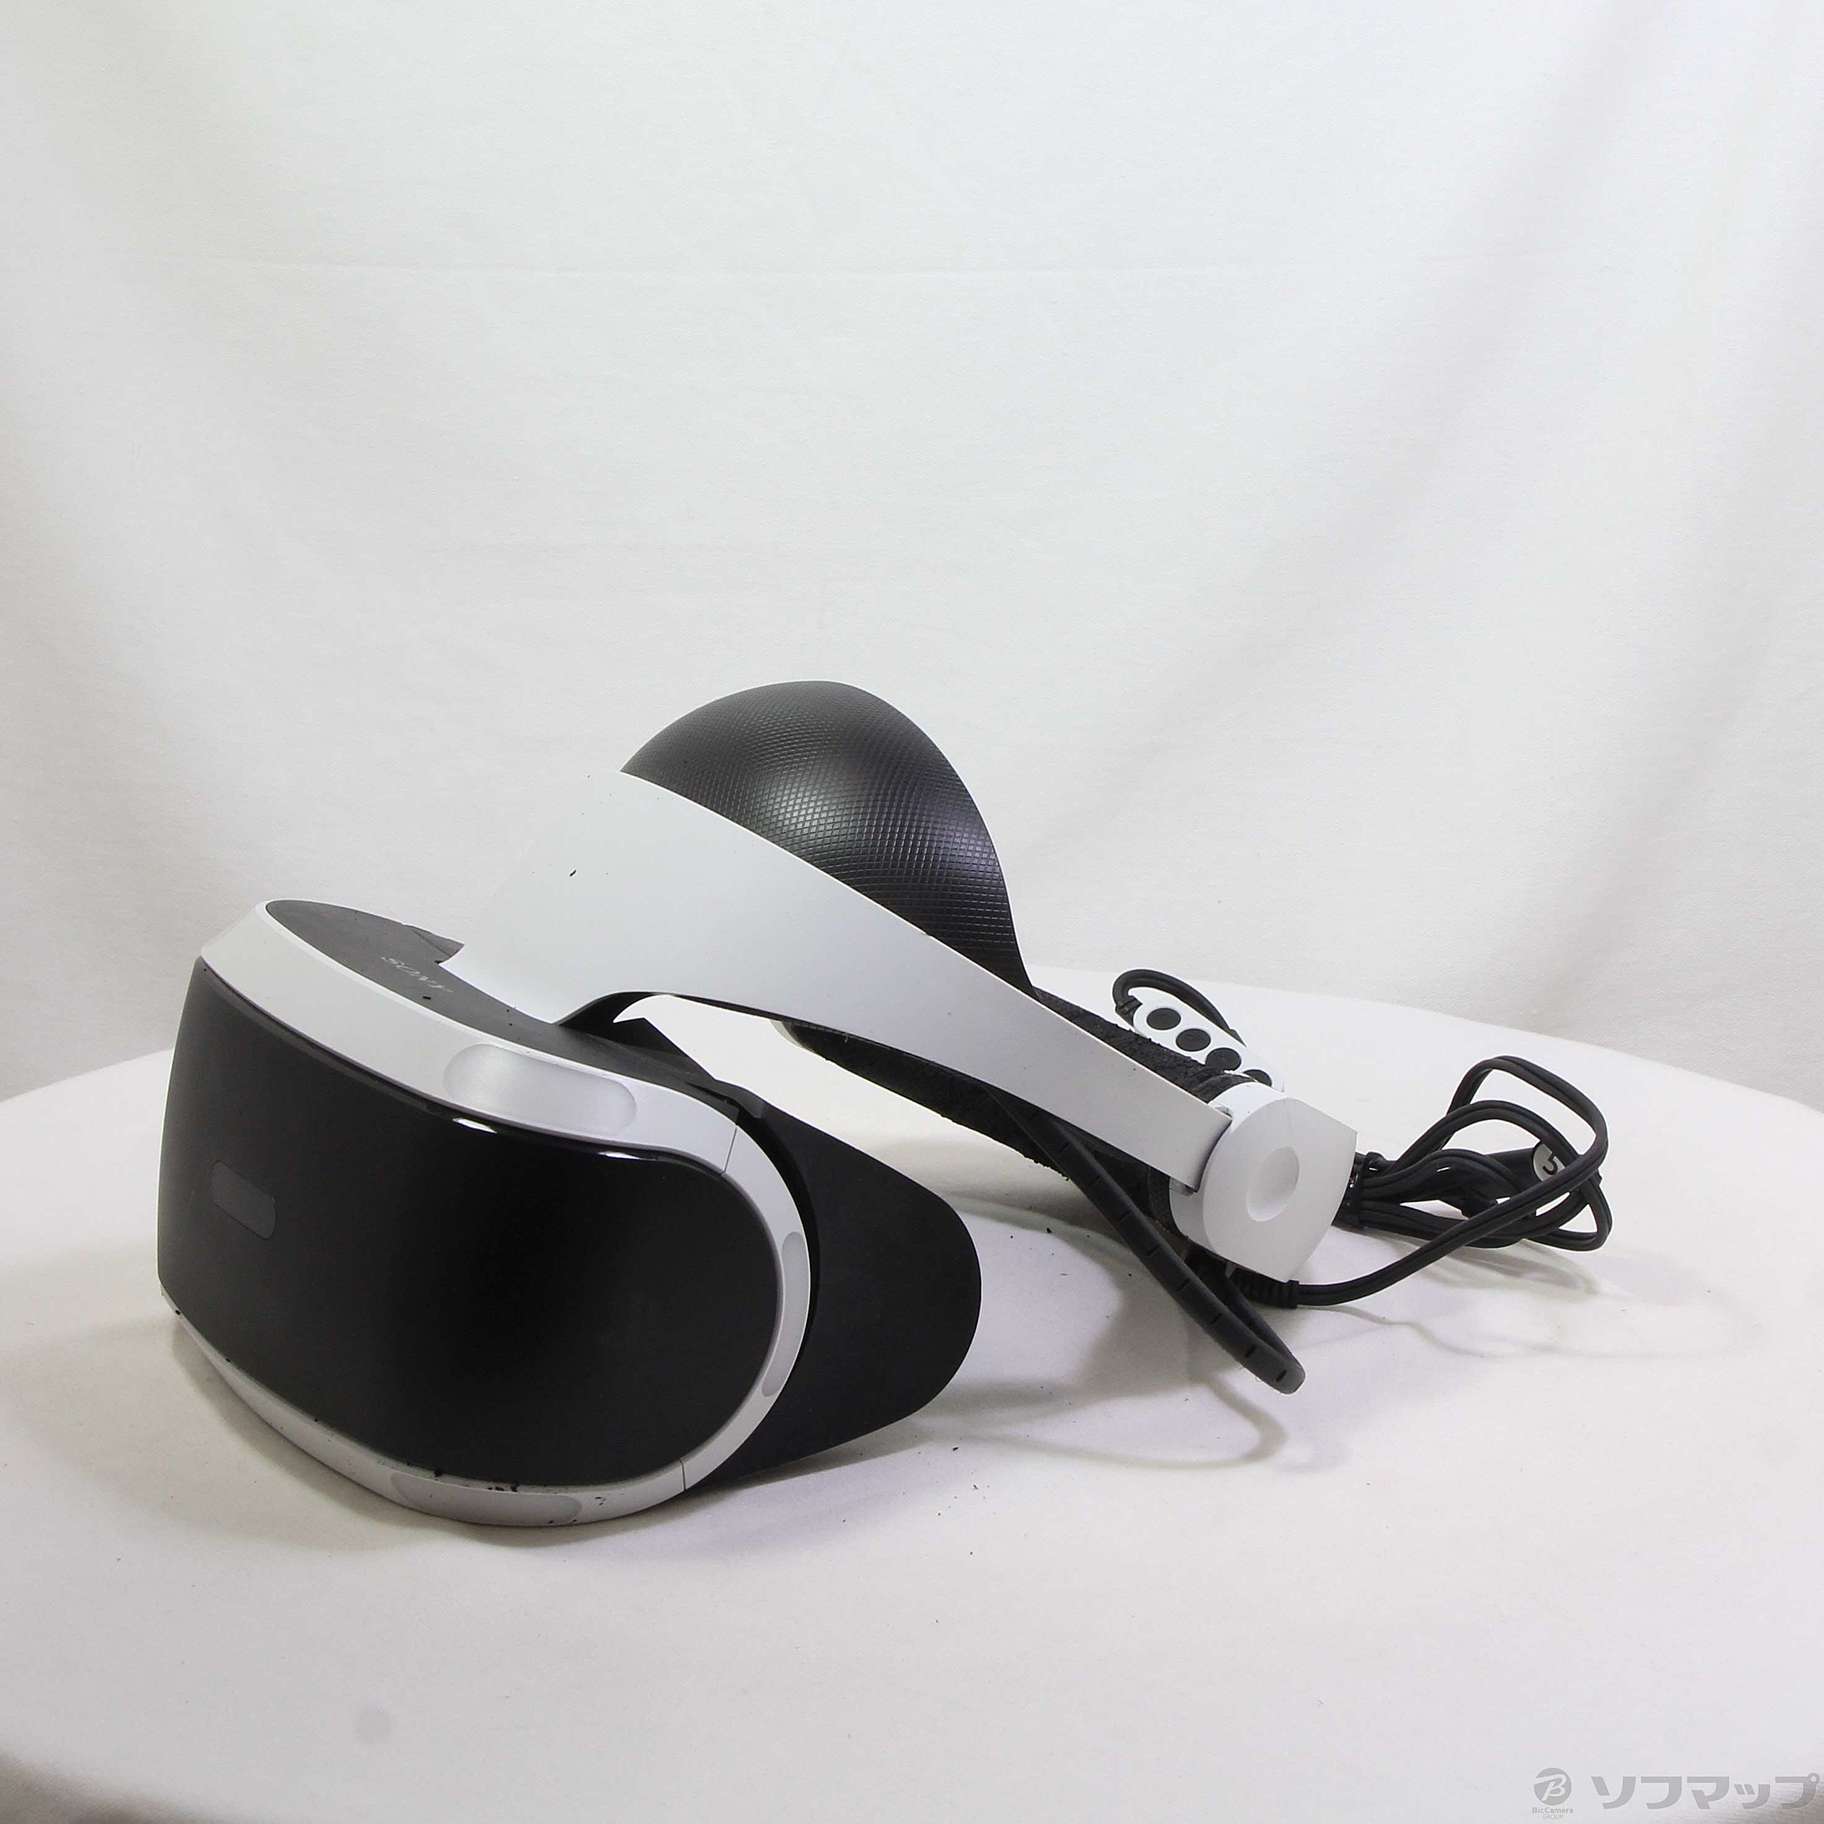 セール対象品 PlayStation VR PlayStation Camera 同梱版 CUHJ-16001